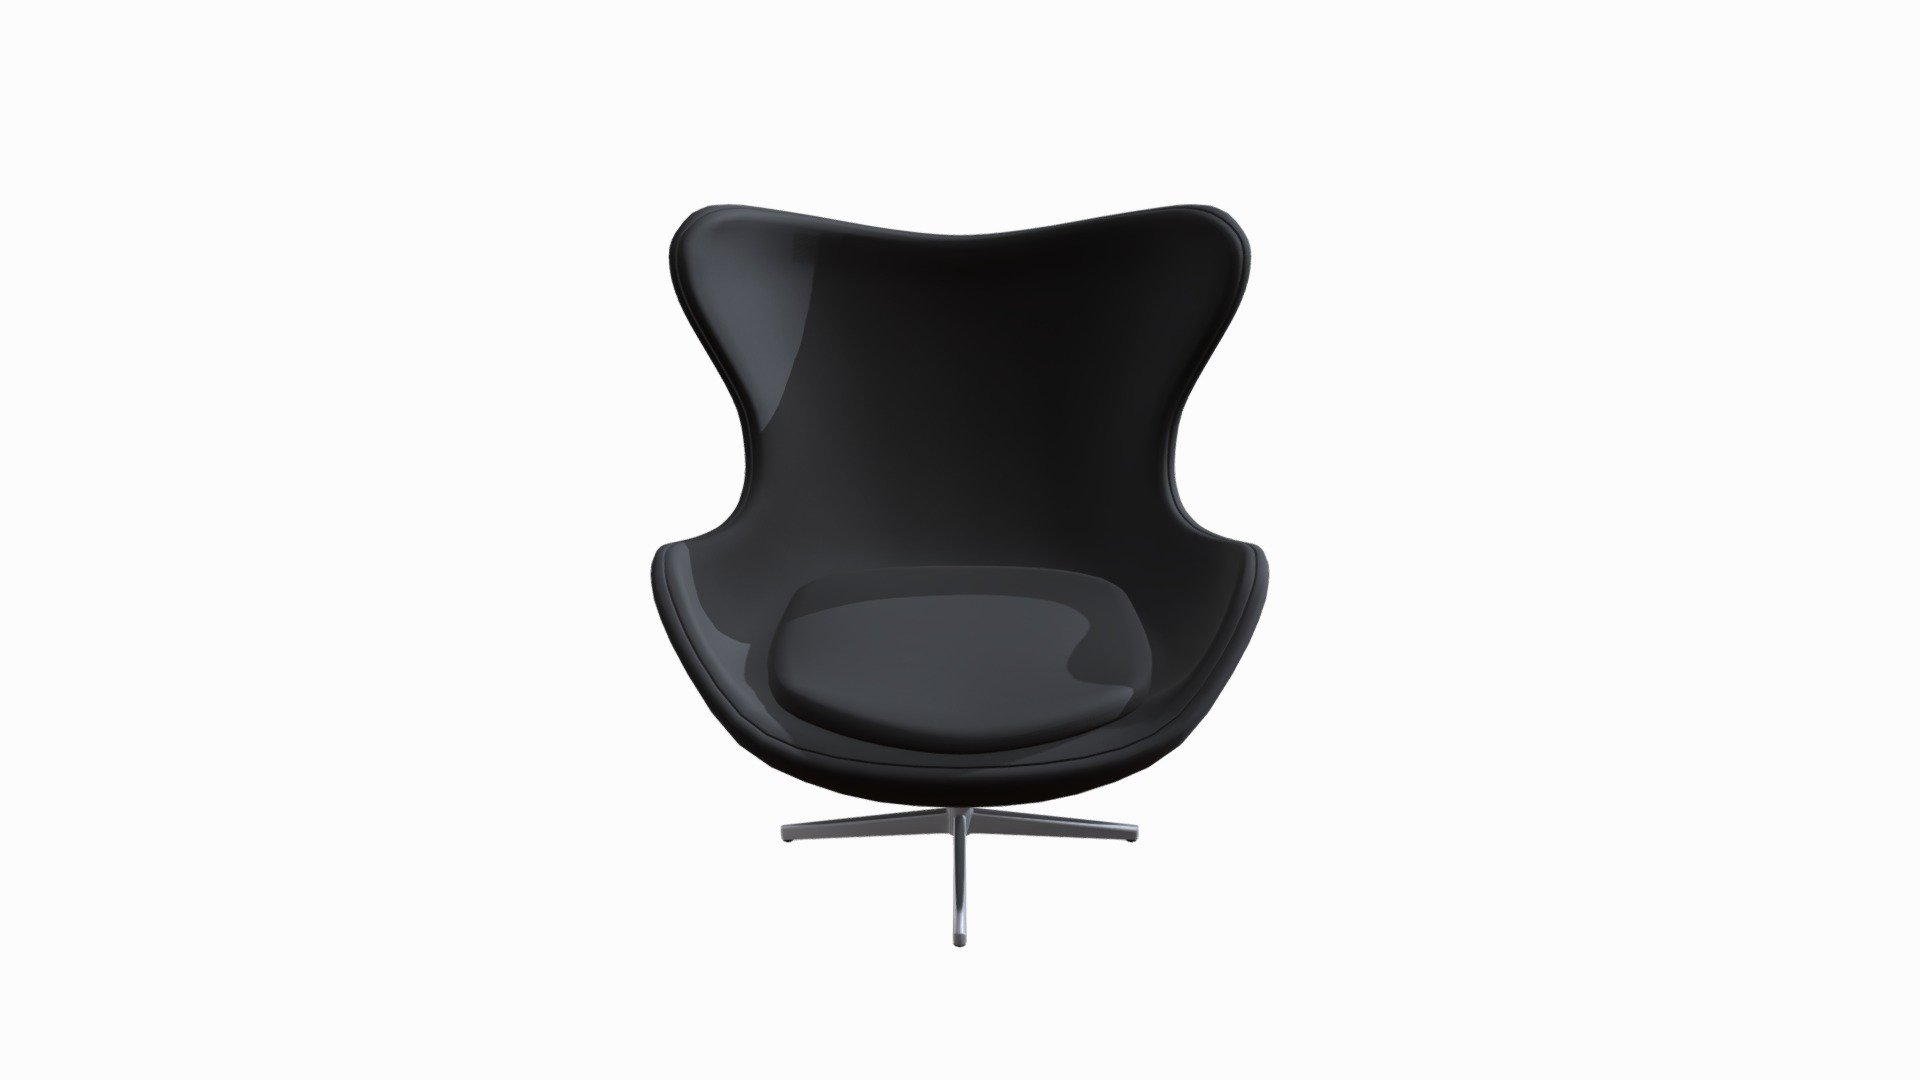 egg_chair-black_HO106174.FBX - 3D model by JMT Rental Furniture and Floor Coverings (@JMT) 3d model